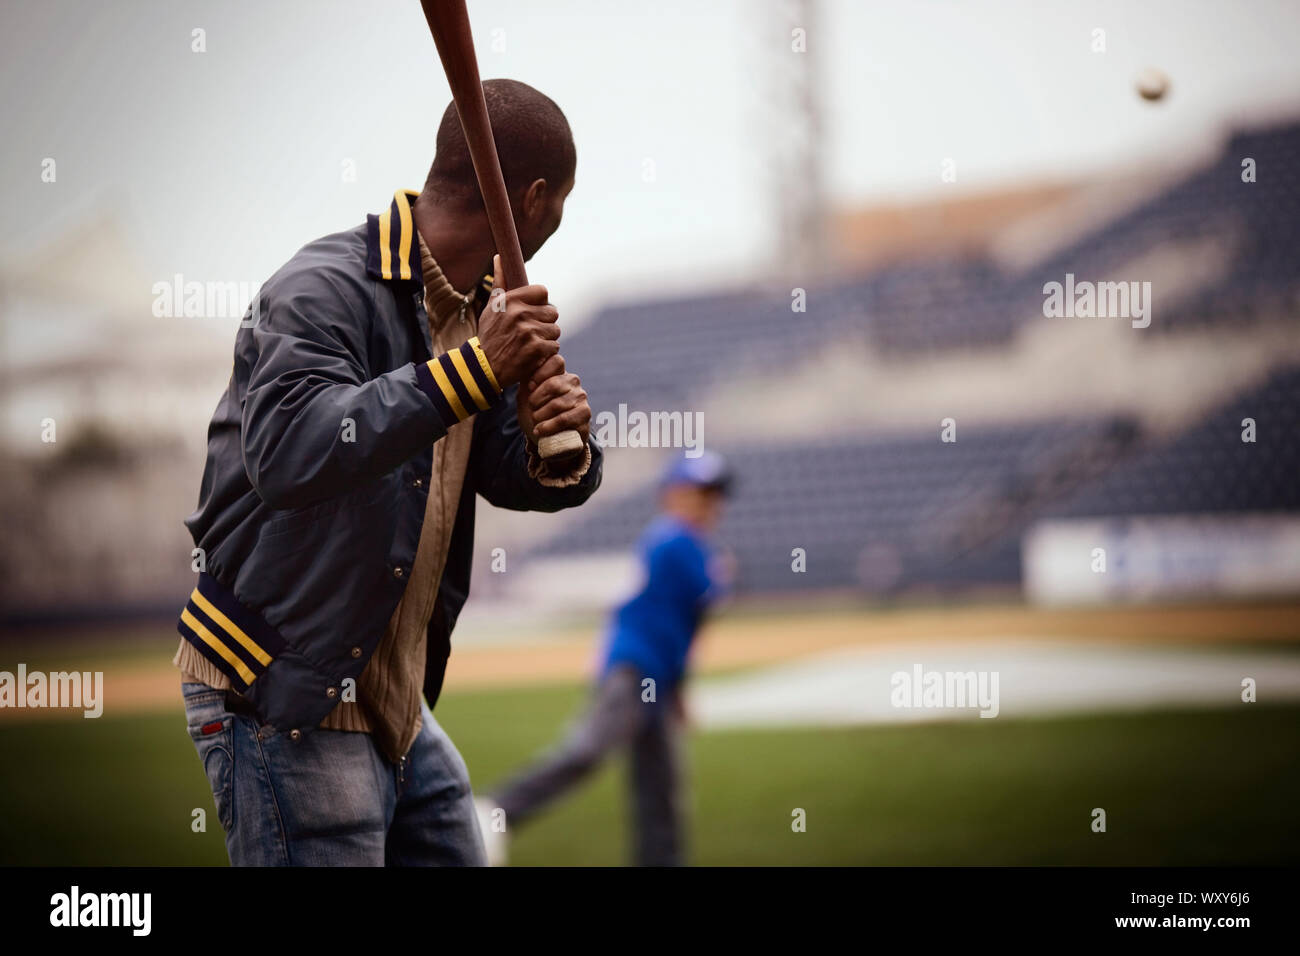 L'homme jouer au baseball avec un petit garçon sur un terrain. Banque D'Images